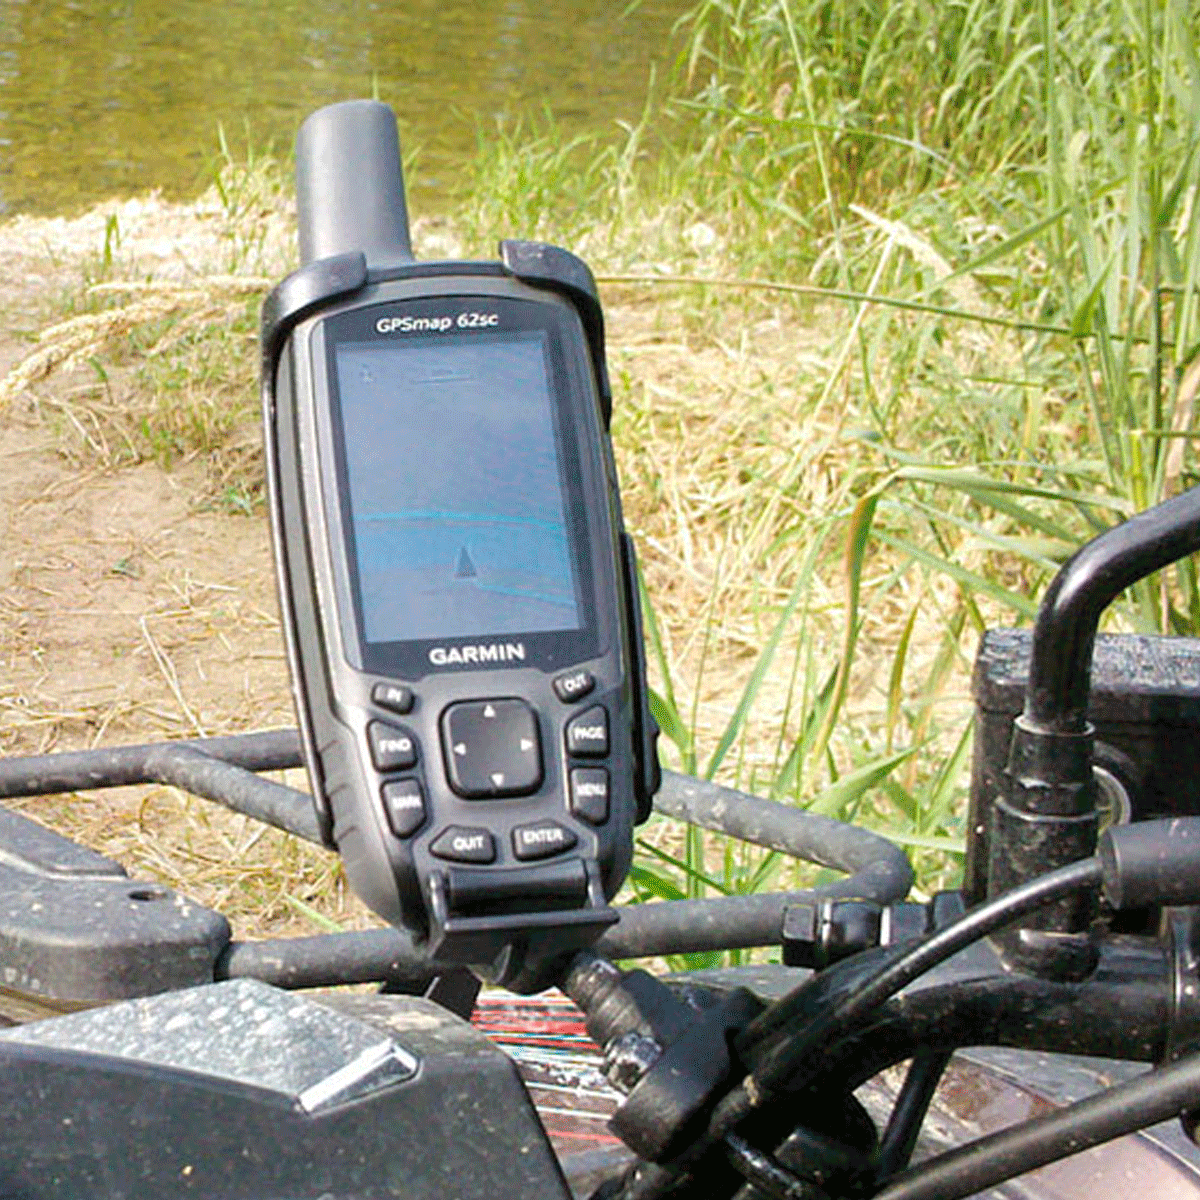 SOPORTE GARMIN 62/64 - Oferta GPS